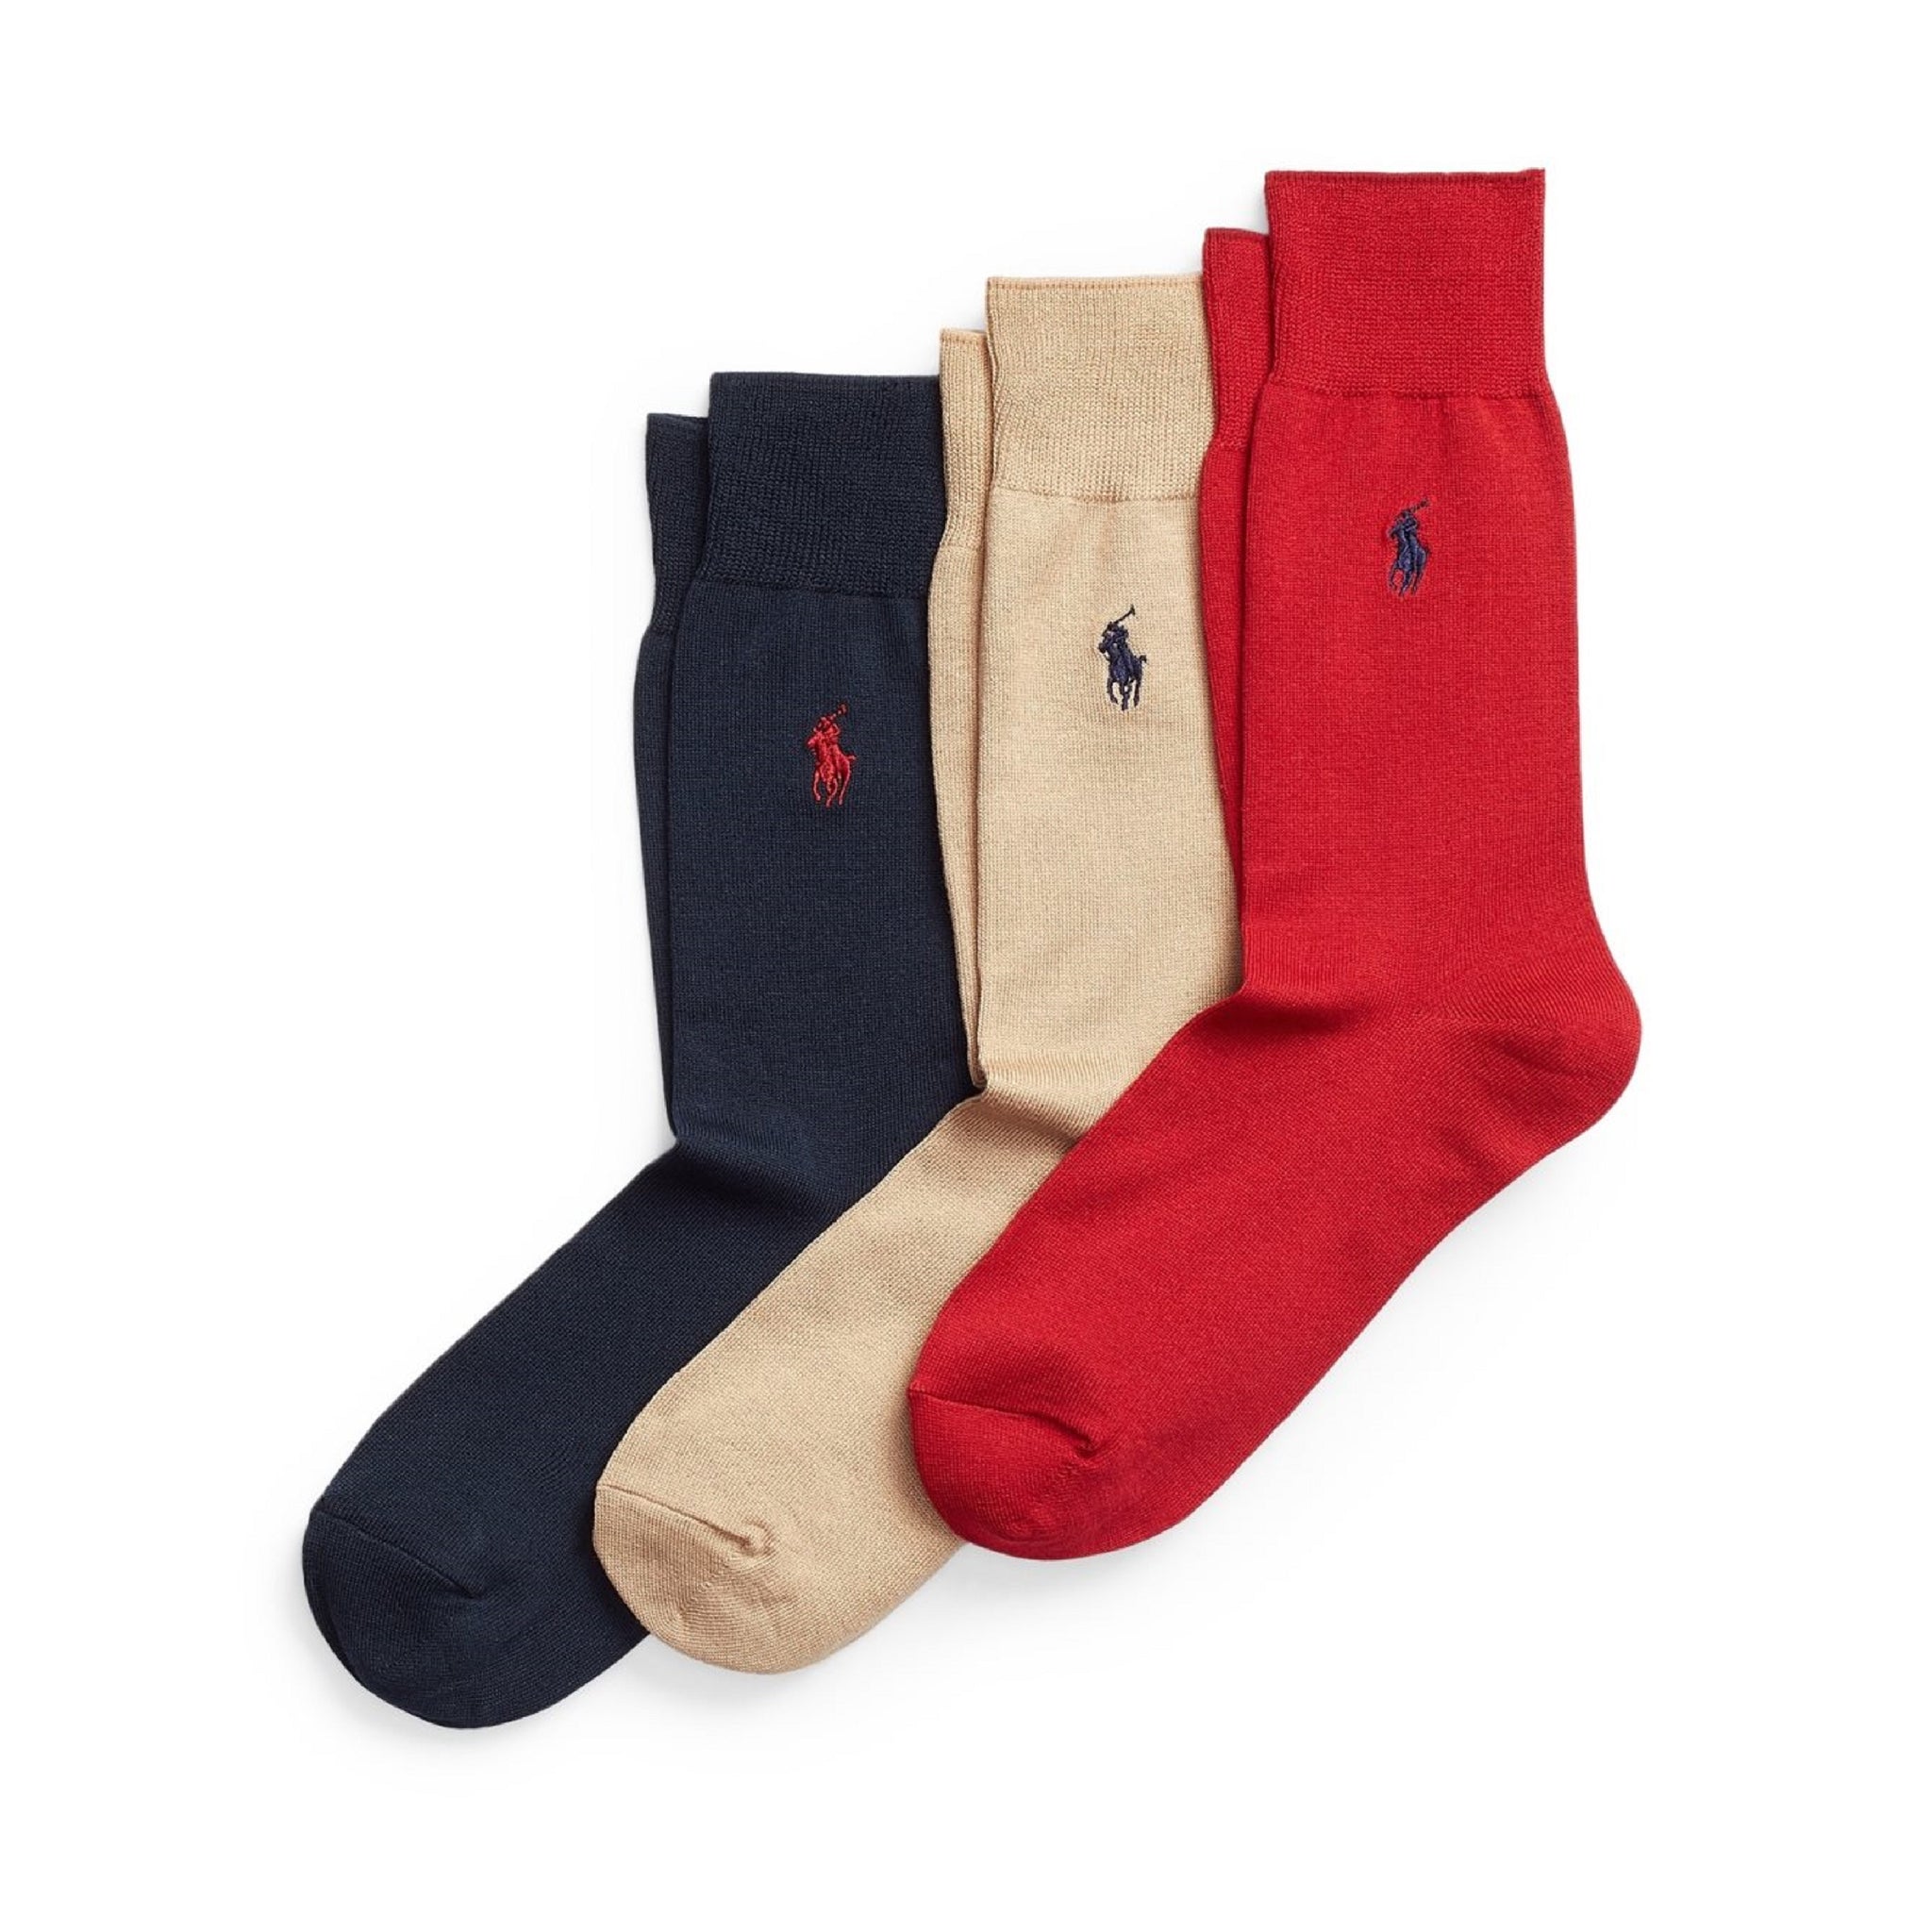 Polo Ralph Lauren Cotton Socks - 3 Pack